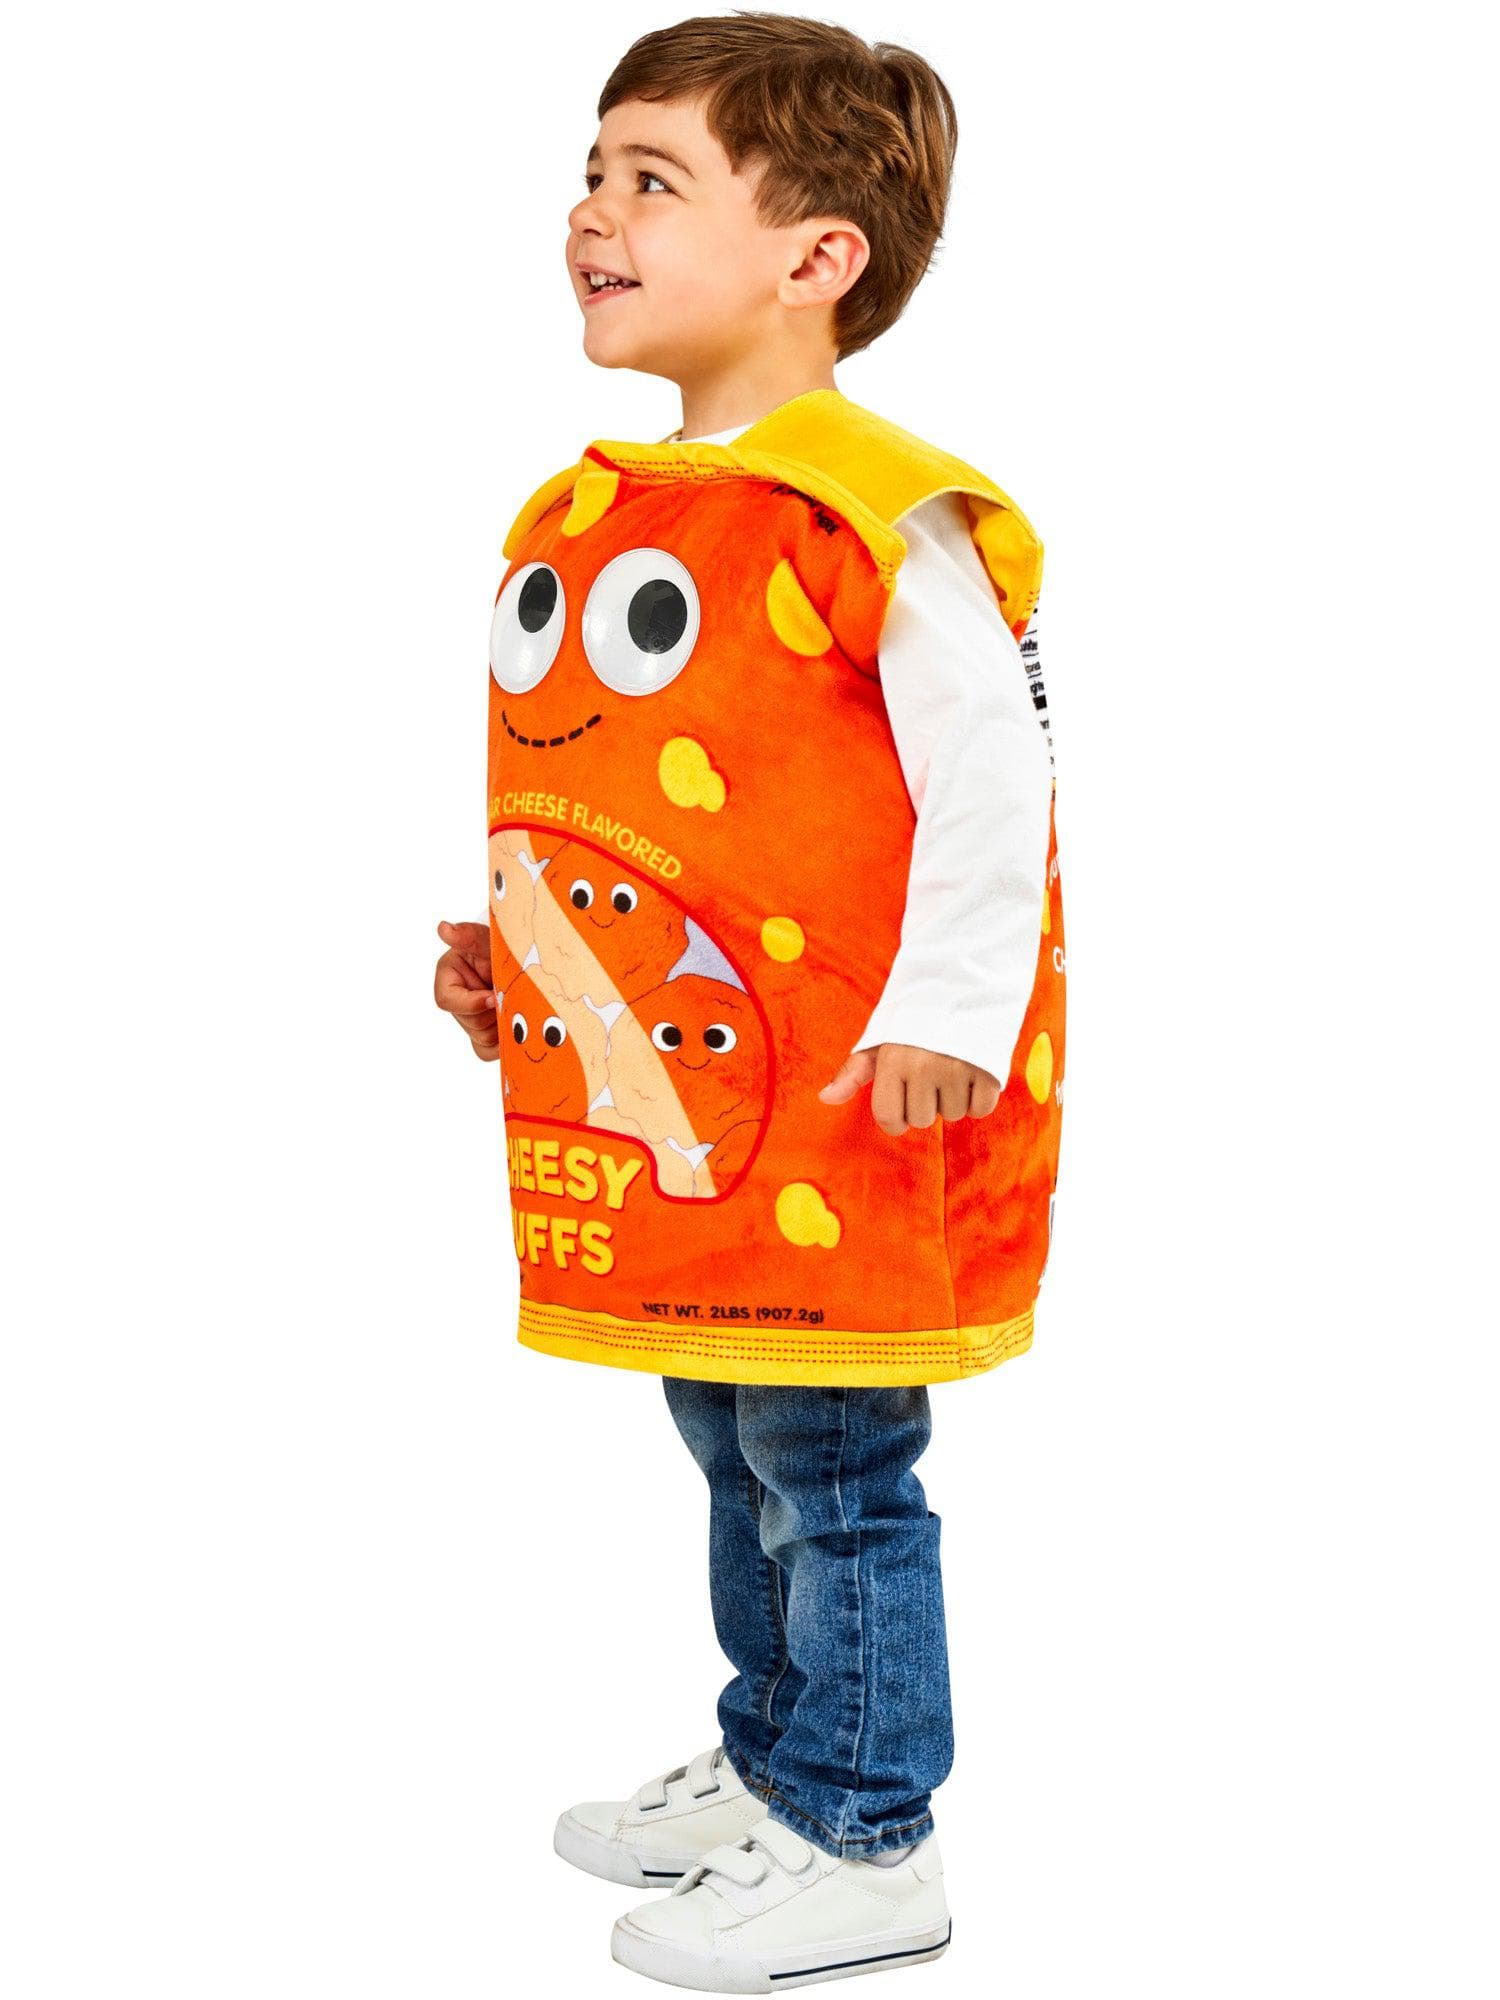 Yummy World Cheesy Puffs Kids Costume by Kidrobot - costumes.com